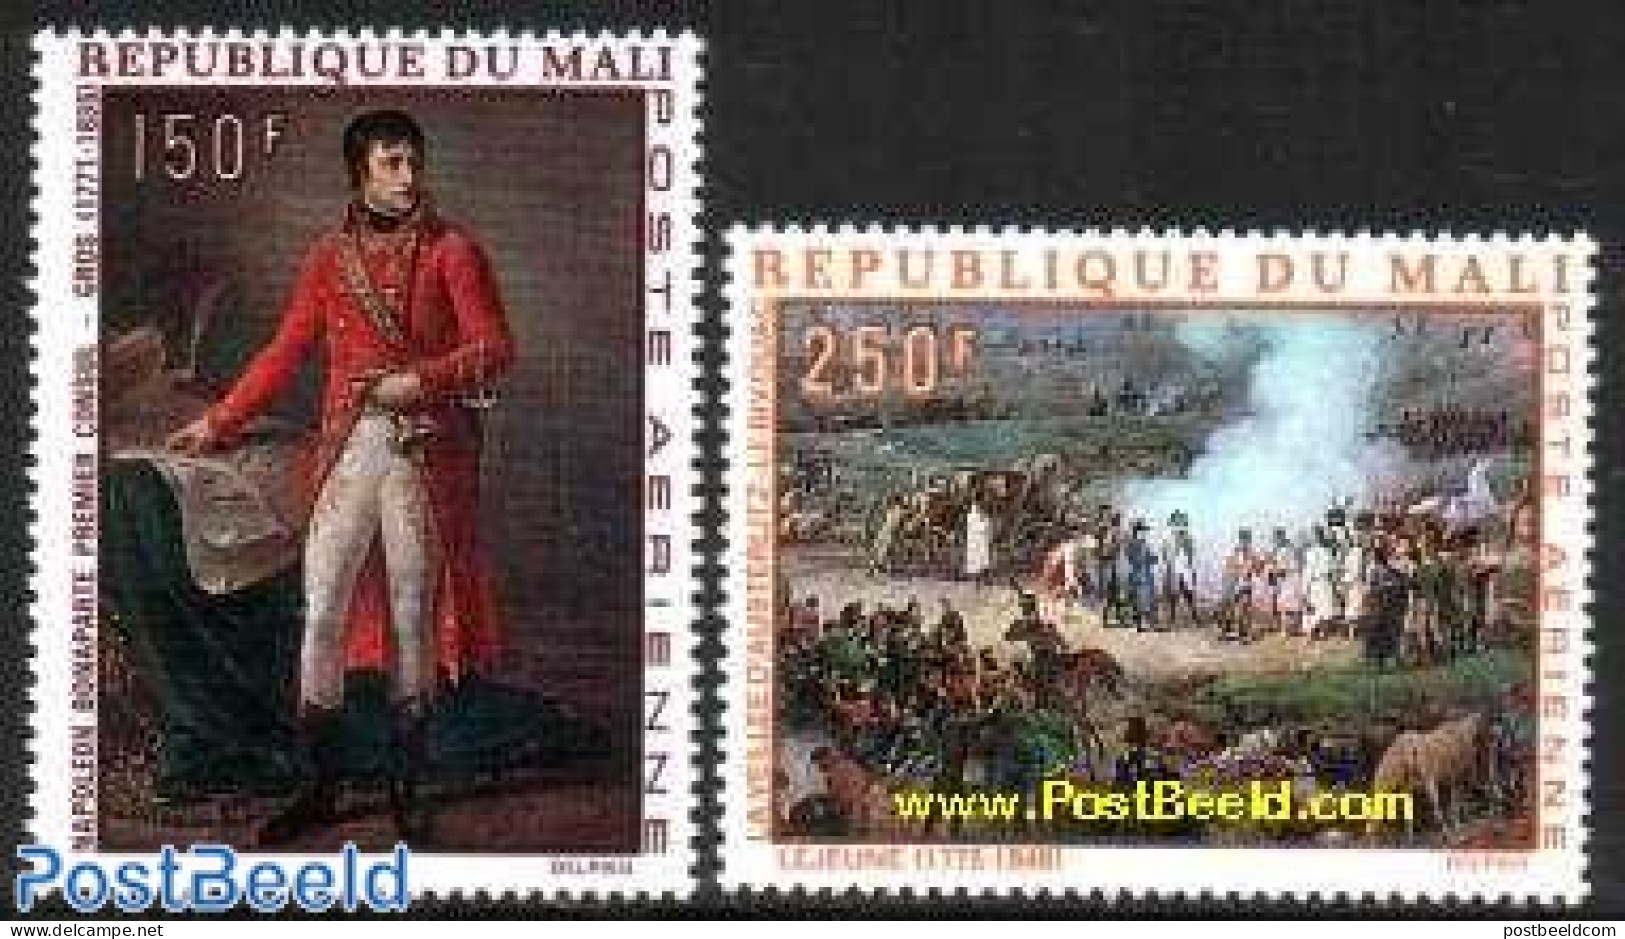 Mali 1969 Napoleon I 2v, Mint NH, History - History - Napoleon - Art - Paintings - Napoleon